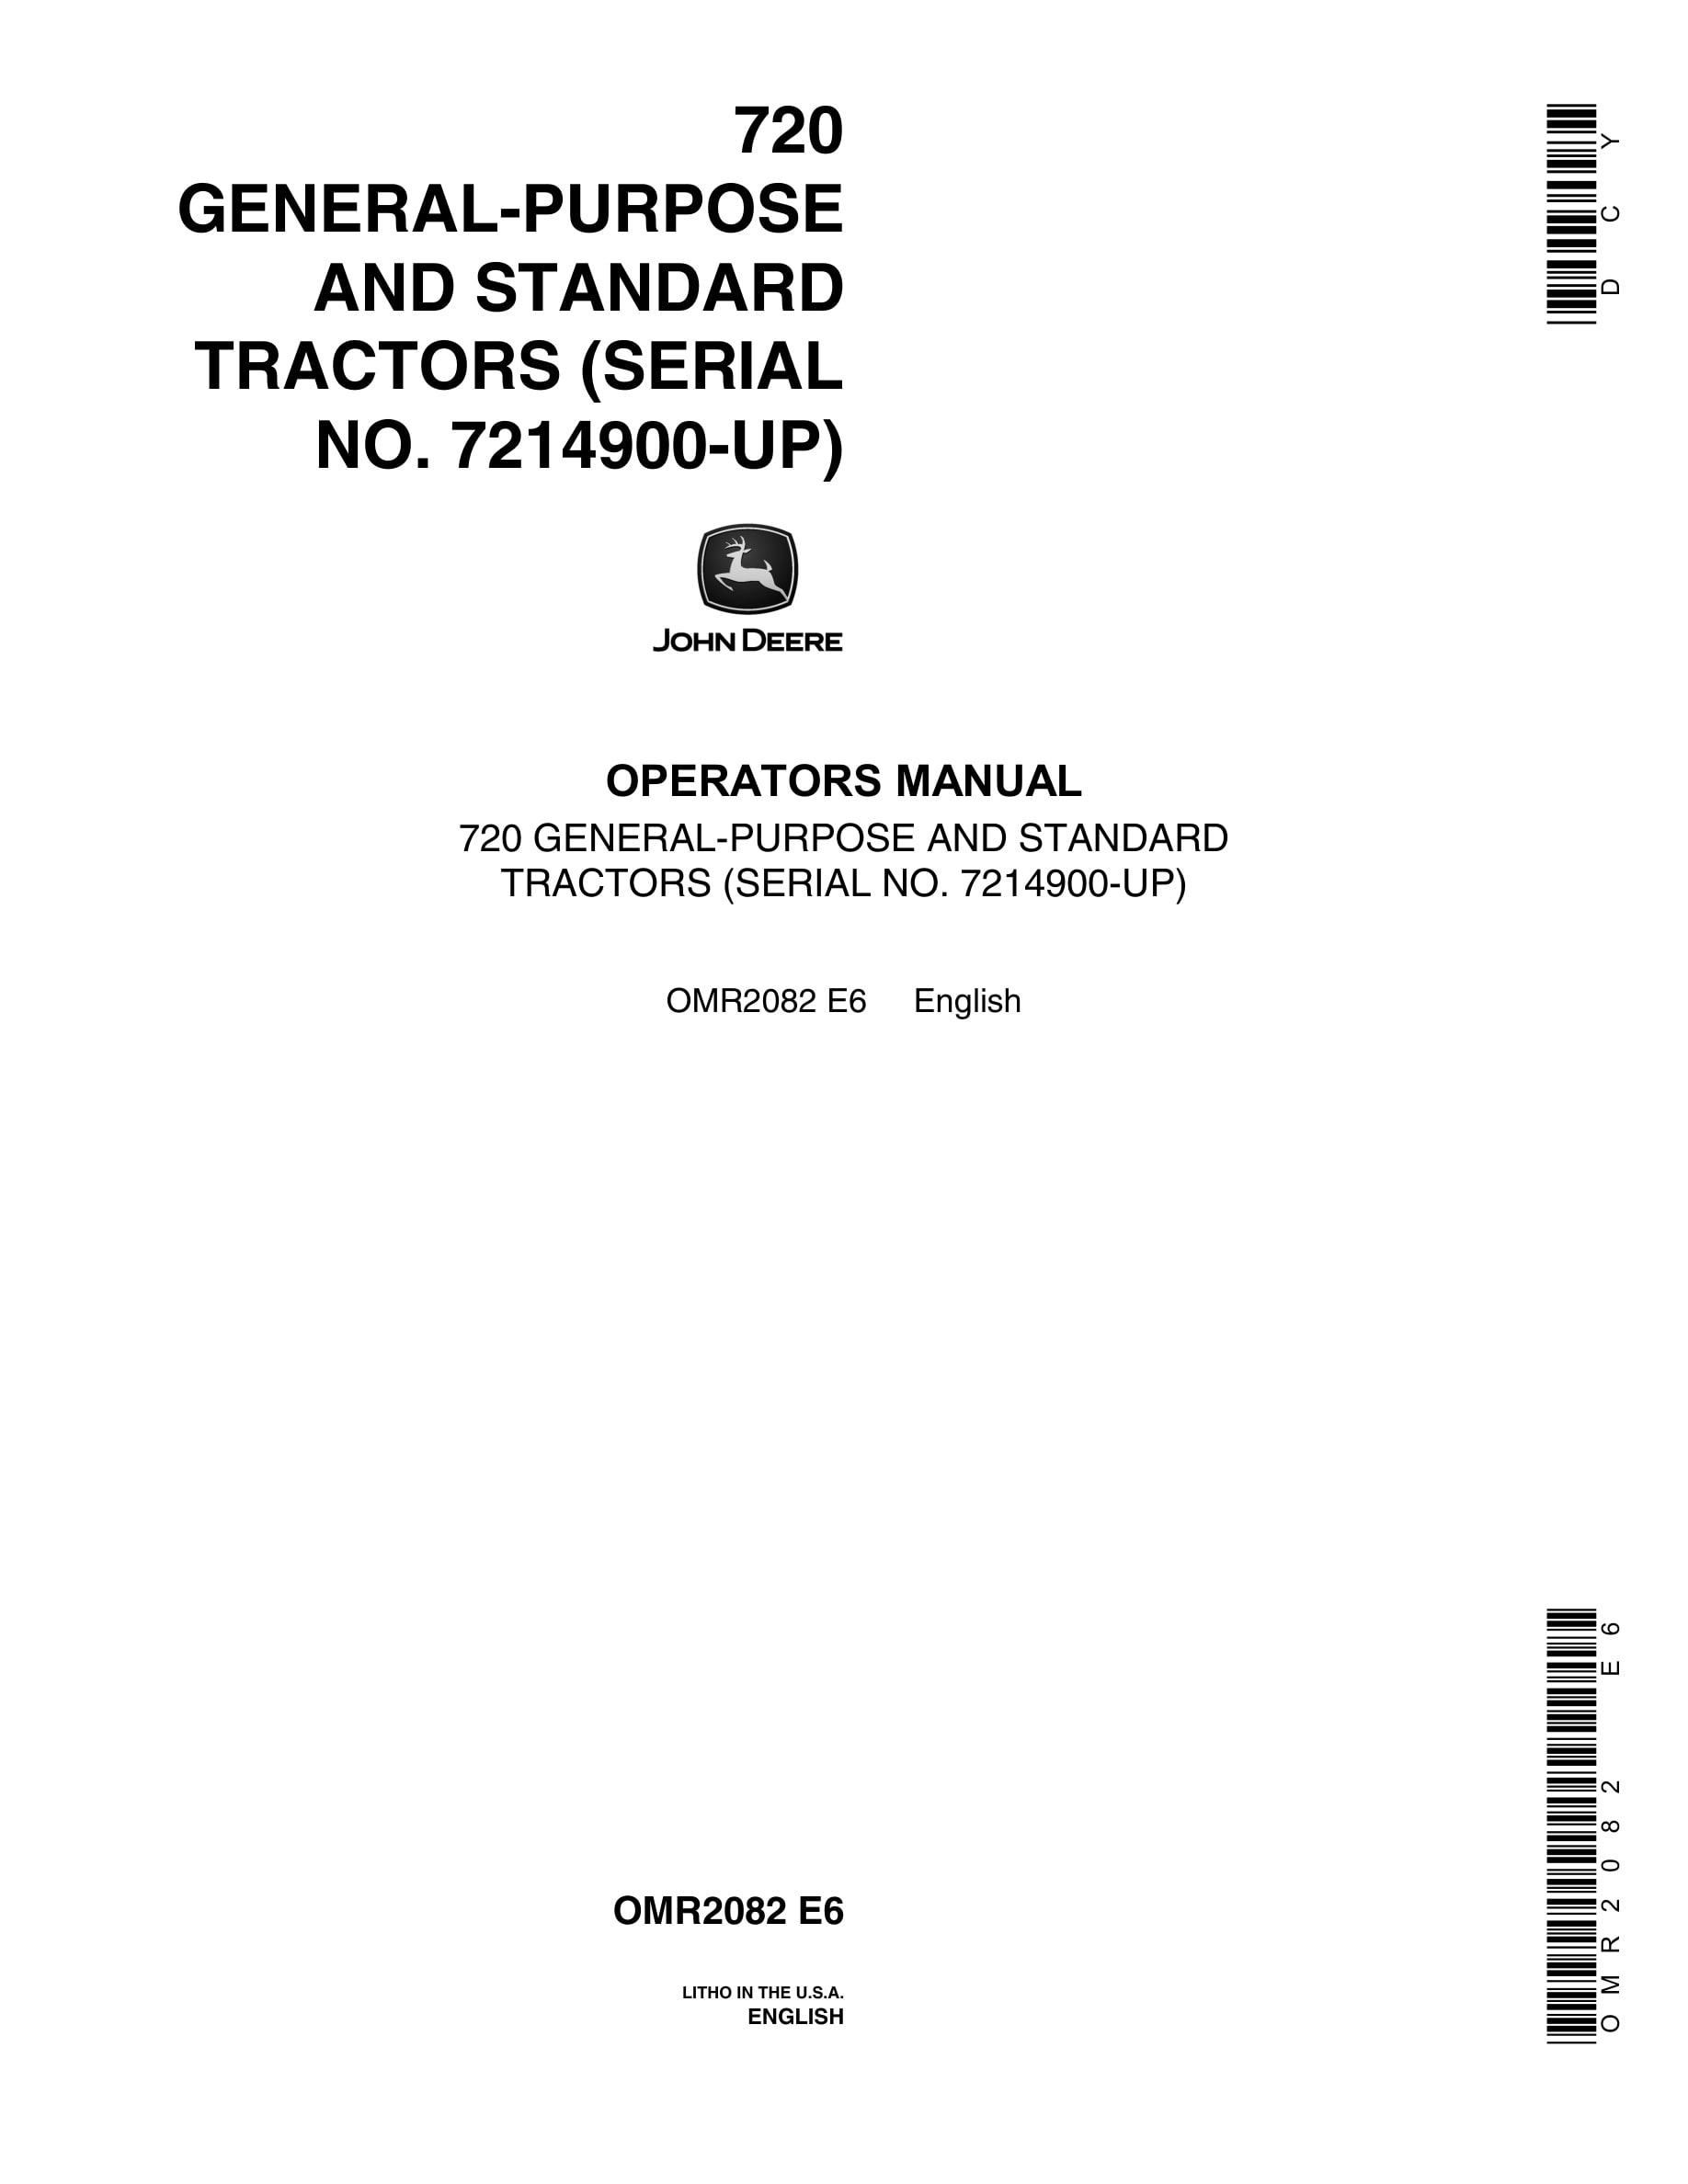 John Deere 720 General-purpose And Standard Tractors Operator Manual OMR208-1